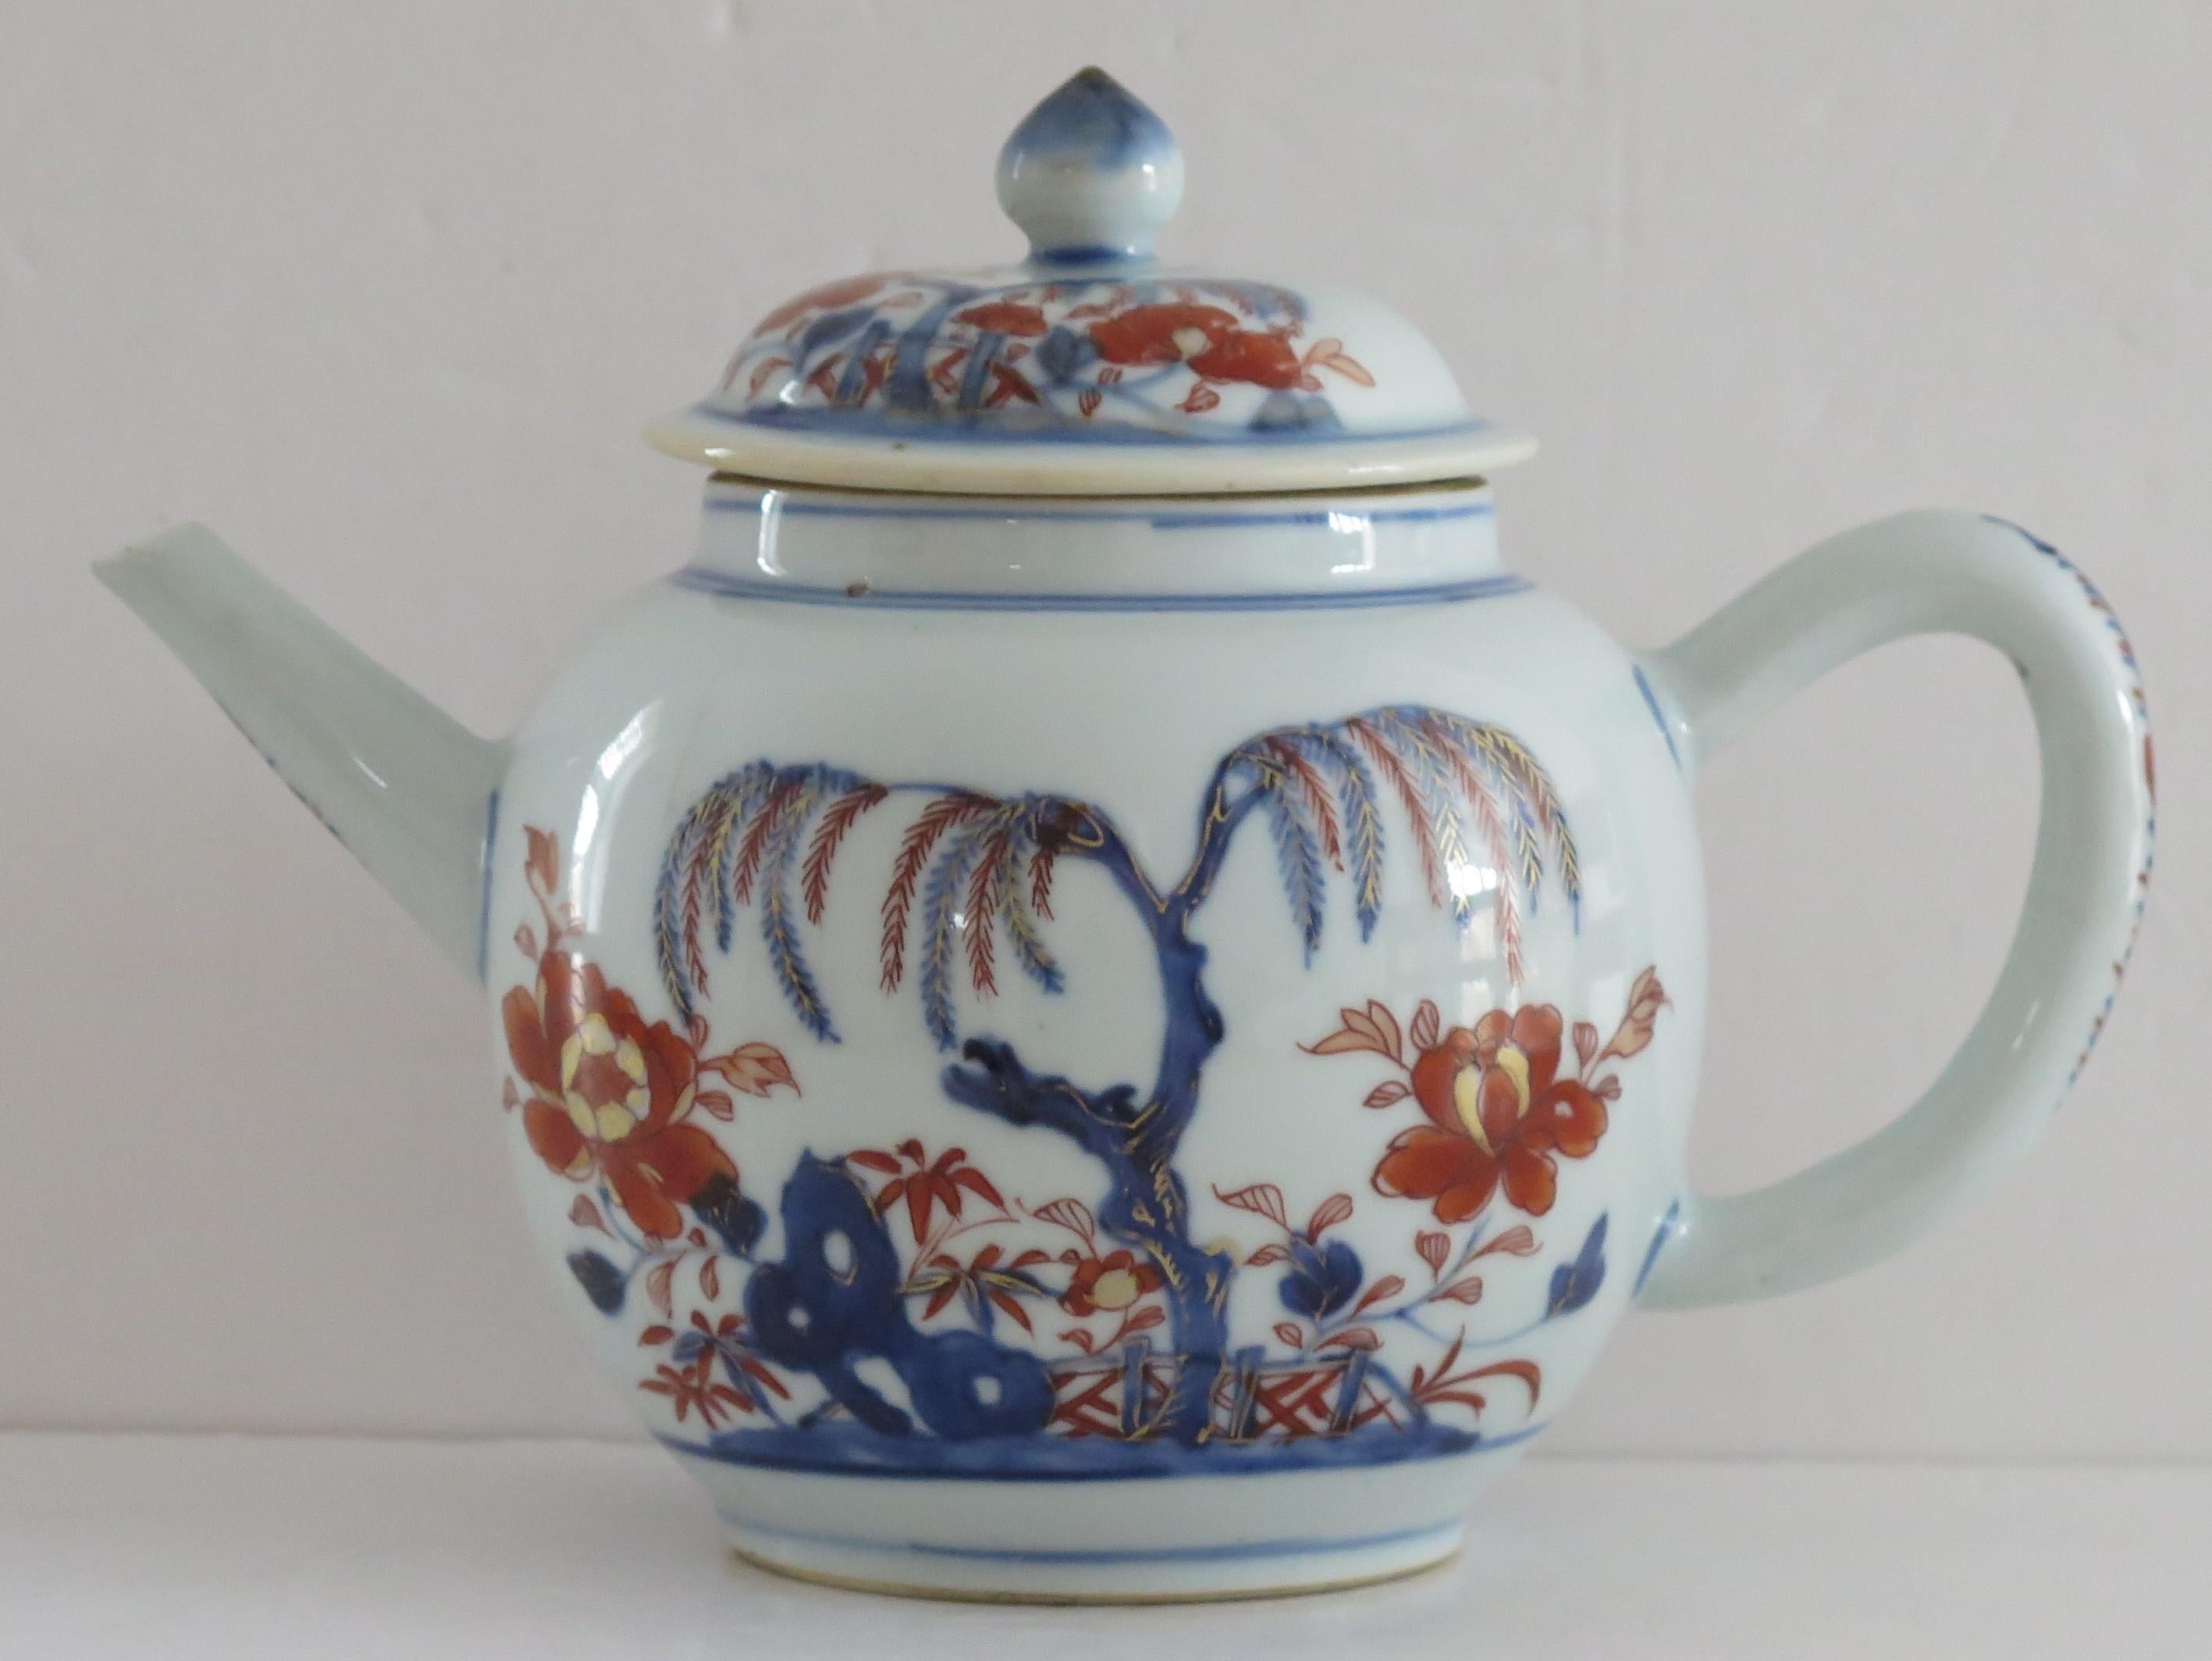 Dies ist eine sehr gute frühe chinesische Teekanne und passenden Deckel aus der Qing-Dynastie, Kangxi-Periode (1662 bis 1722), die wir auf CIRCA 1710 datieren.

Die Teekanne hat eine kugelförmige Form auf einem kurzen Fuß, mit einem geschwungenen